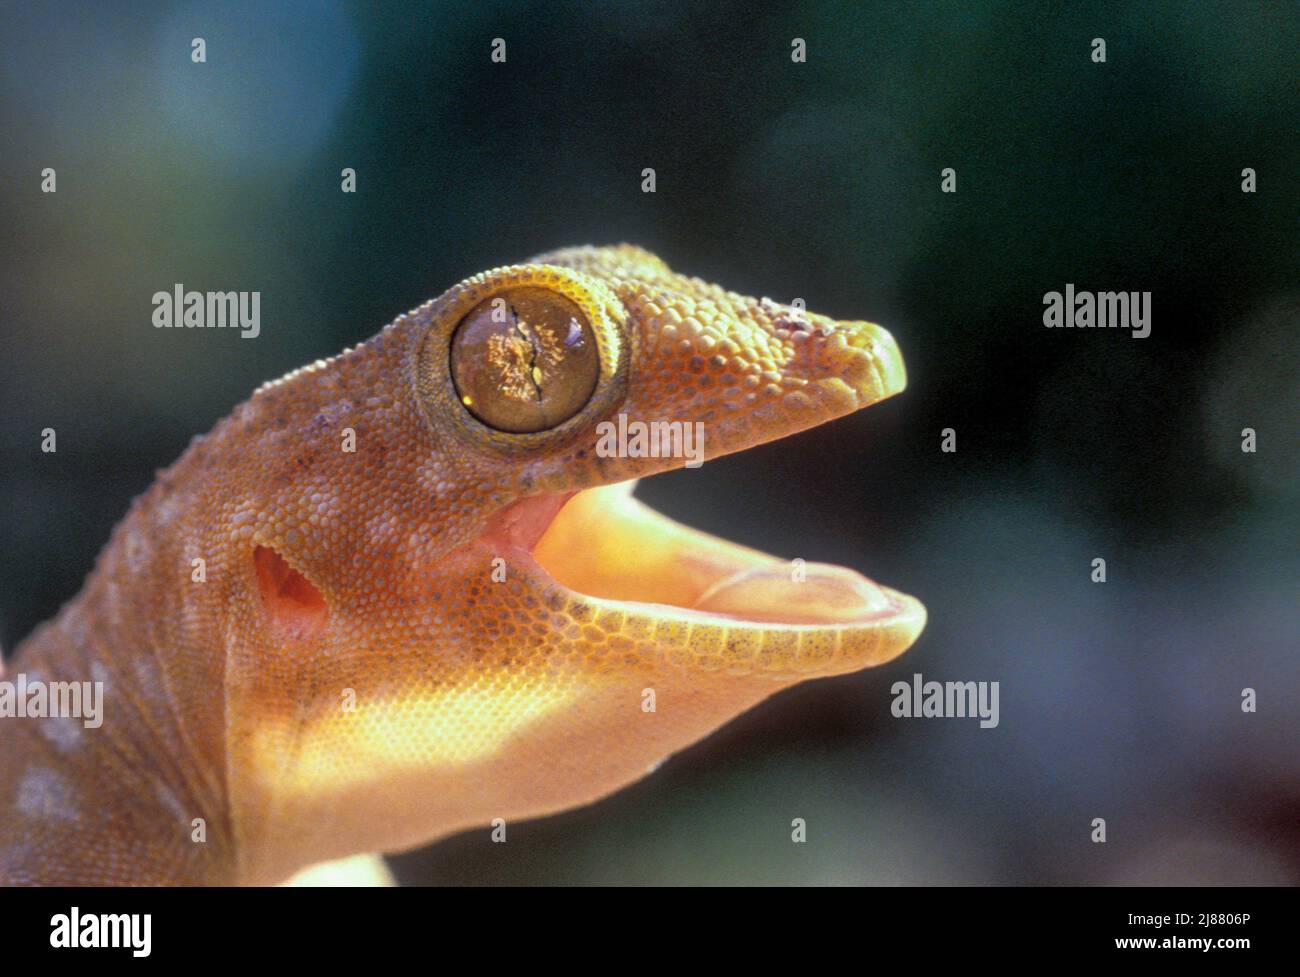 Fan-fingered gecko Stock Photo